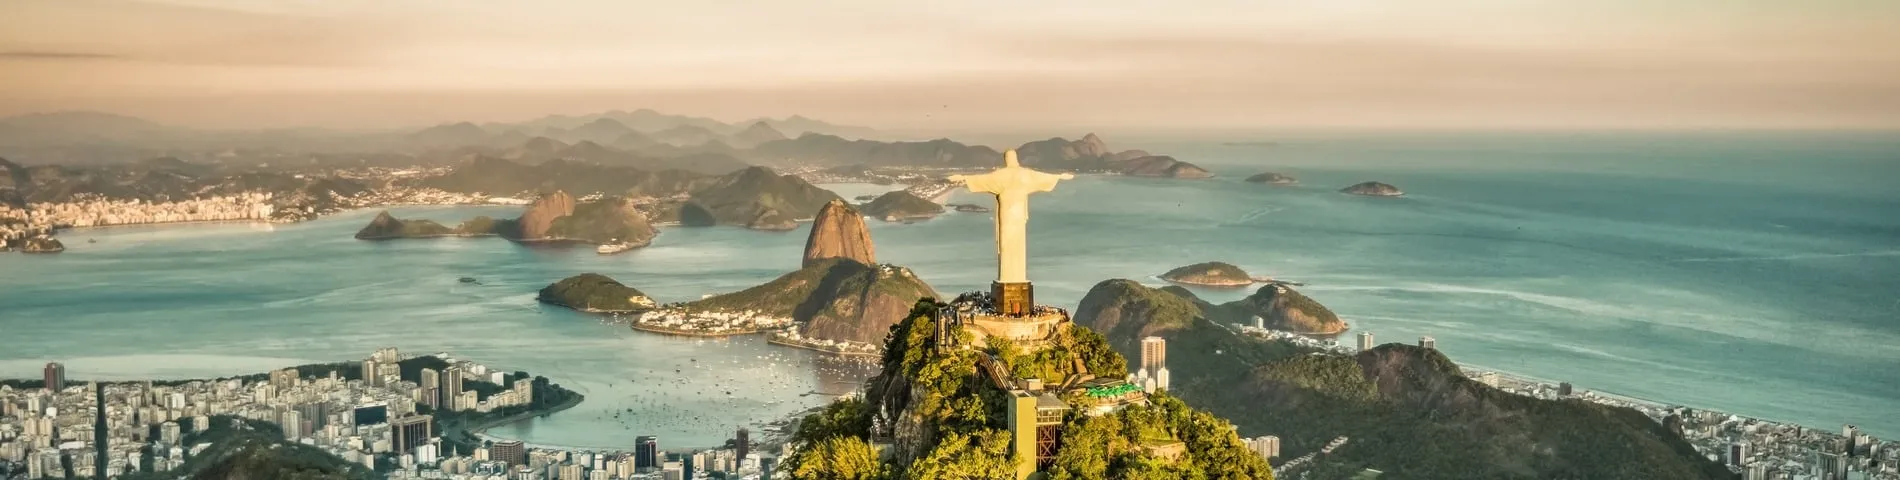 Rio de Janeiro - General